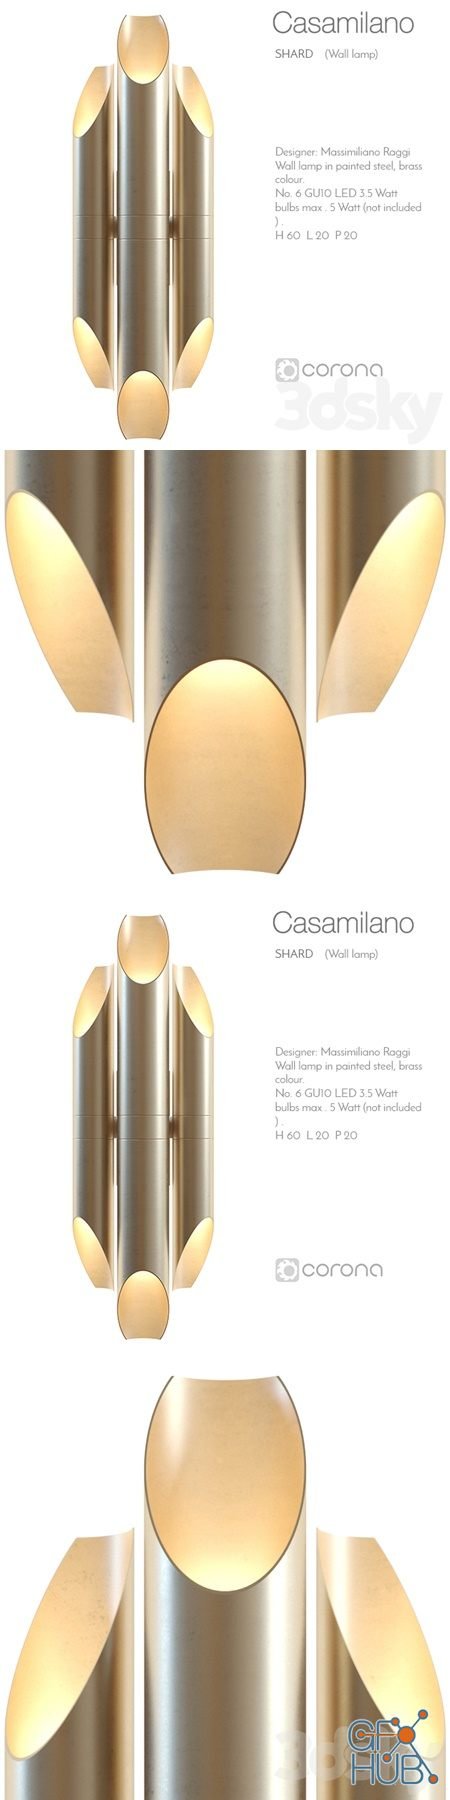 Casamilano shard wall lamp